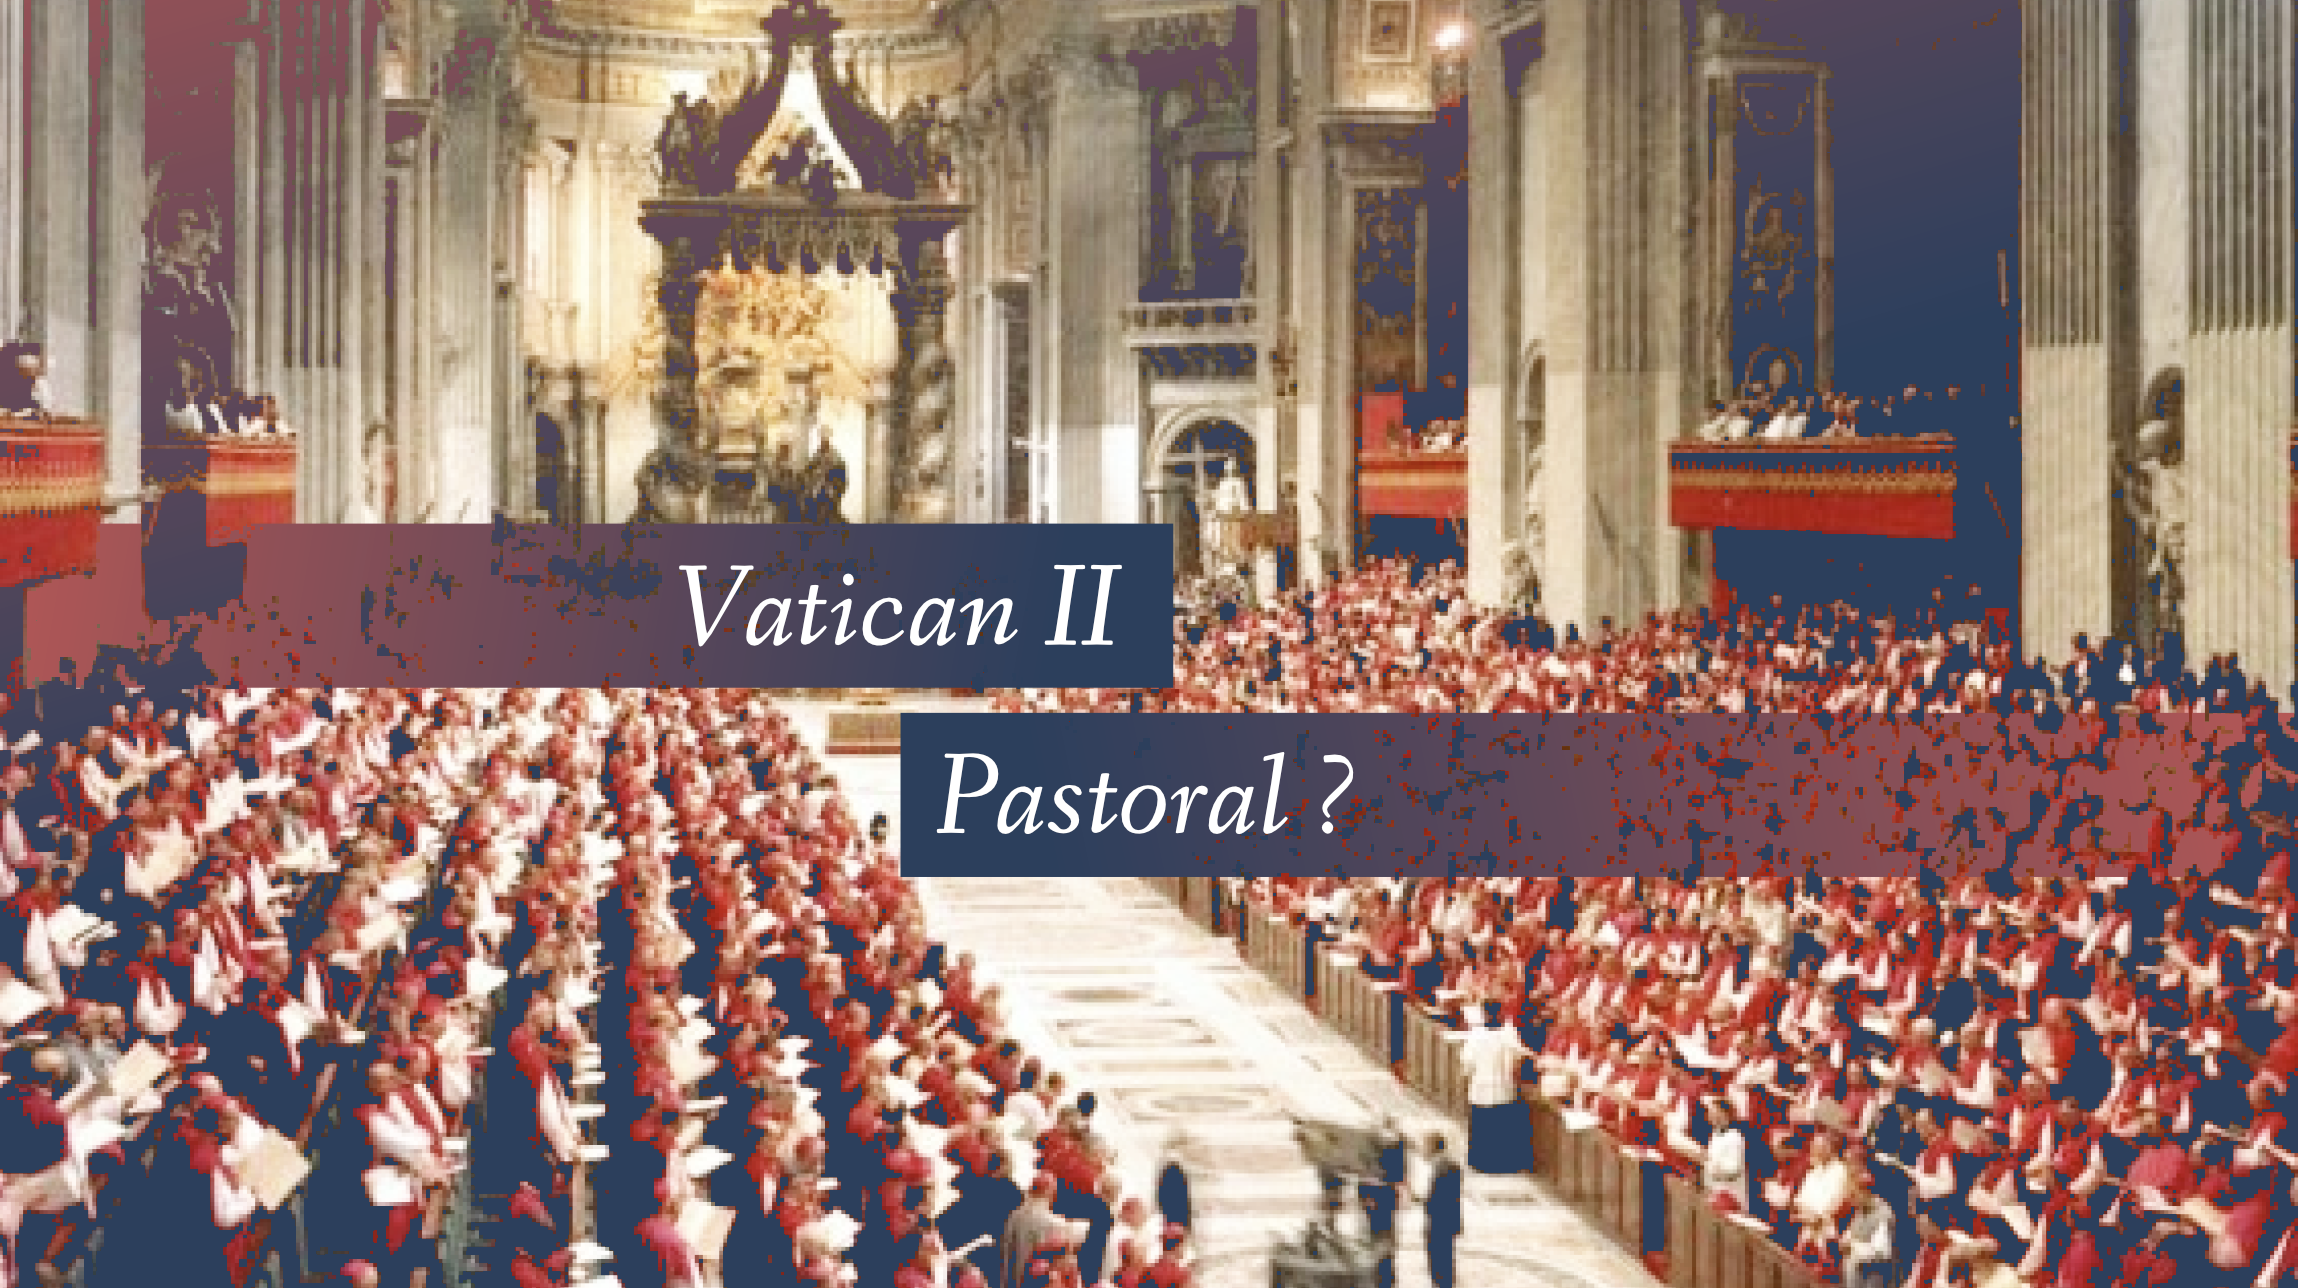 Peut-on rejeter Vatican II car il s’agit d’un concile pastoral ?